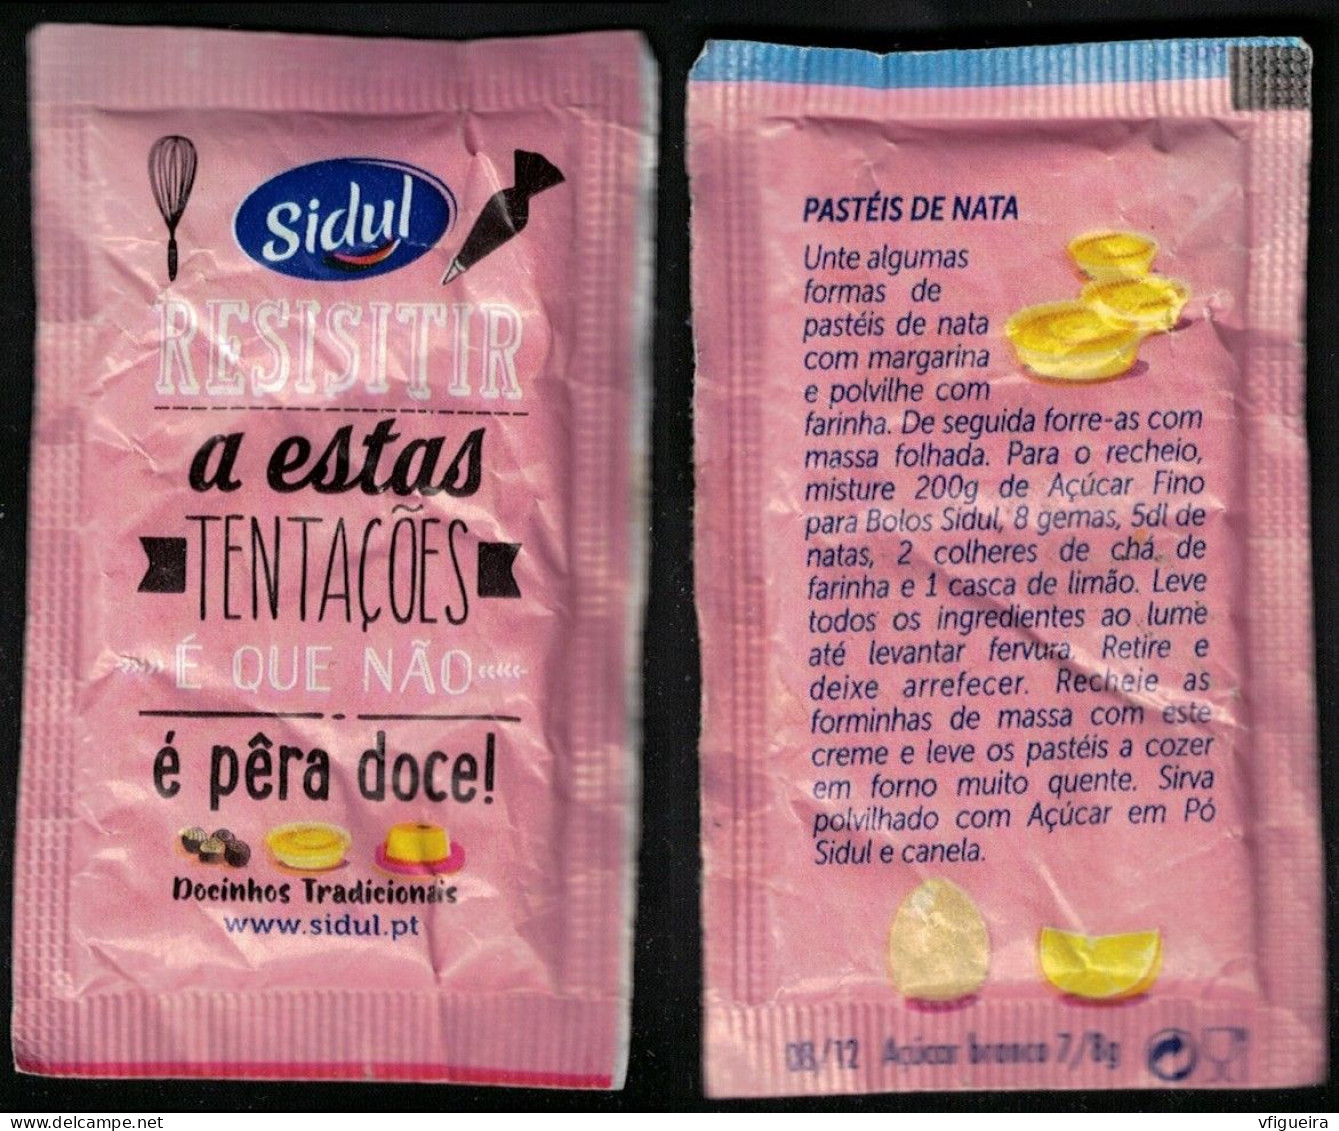 Portugal Sachet Sucre Sugar Bag Sidul Resistir A Estas Tentações é Que Não é Pêra Doce Pastéis De Nata - Azúcar